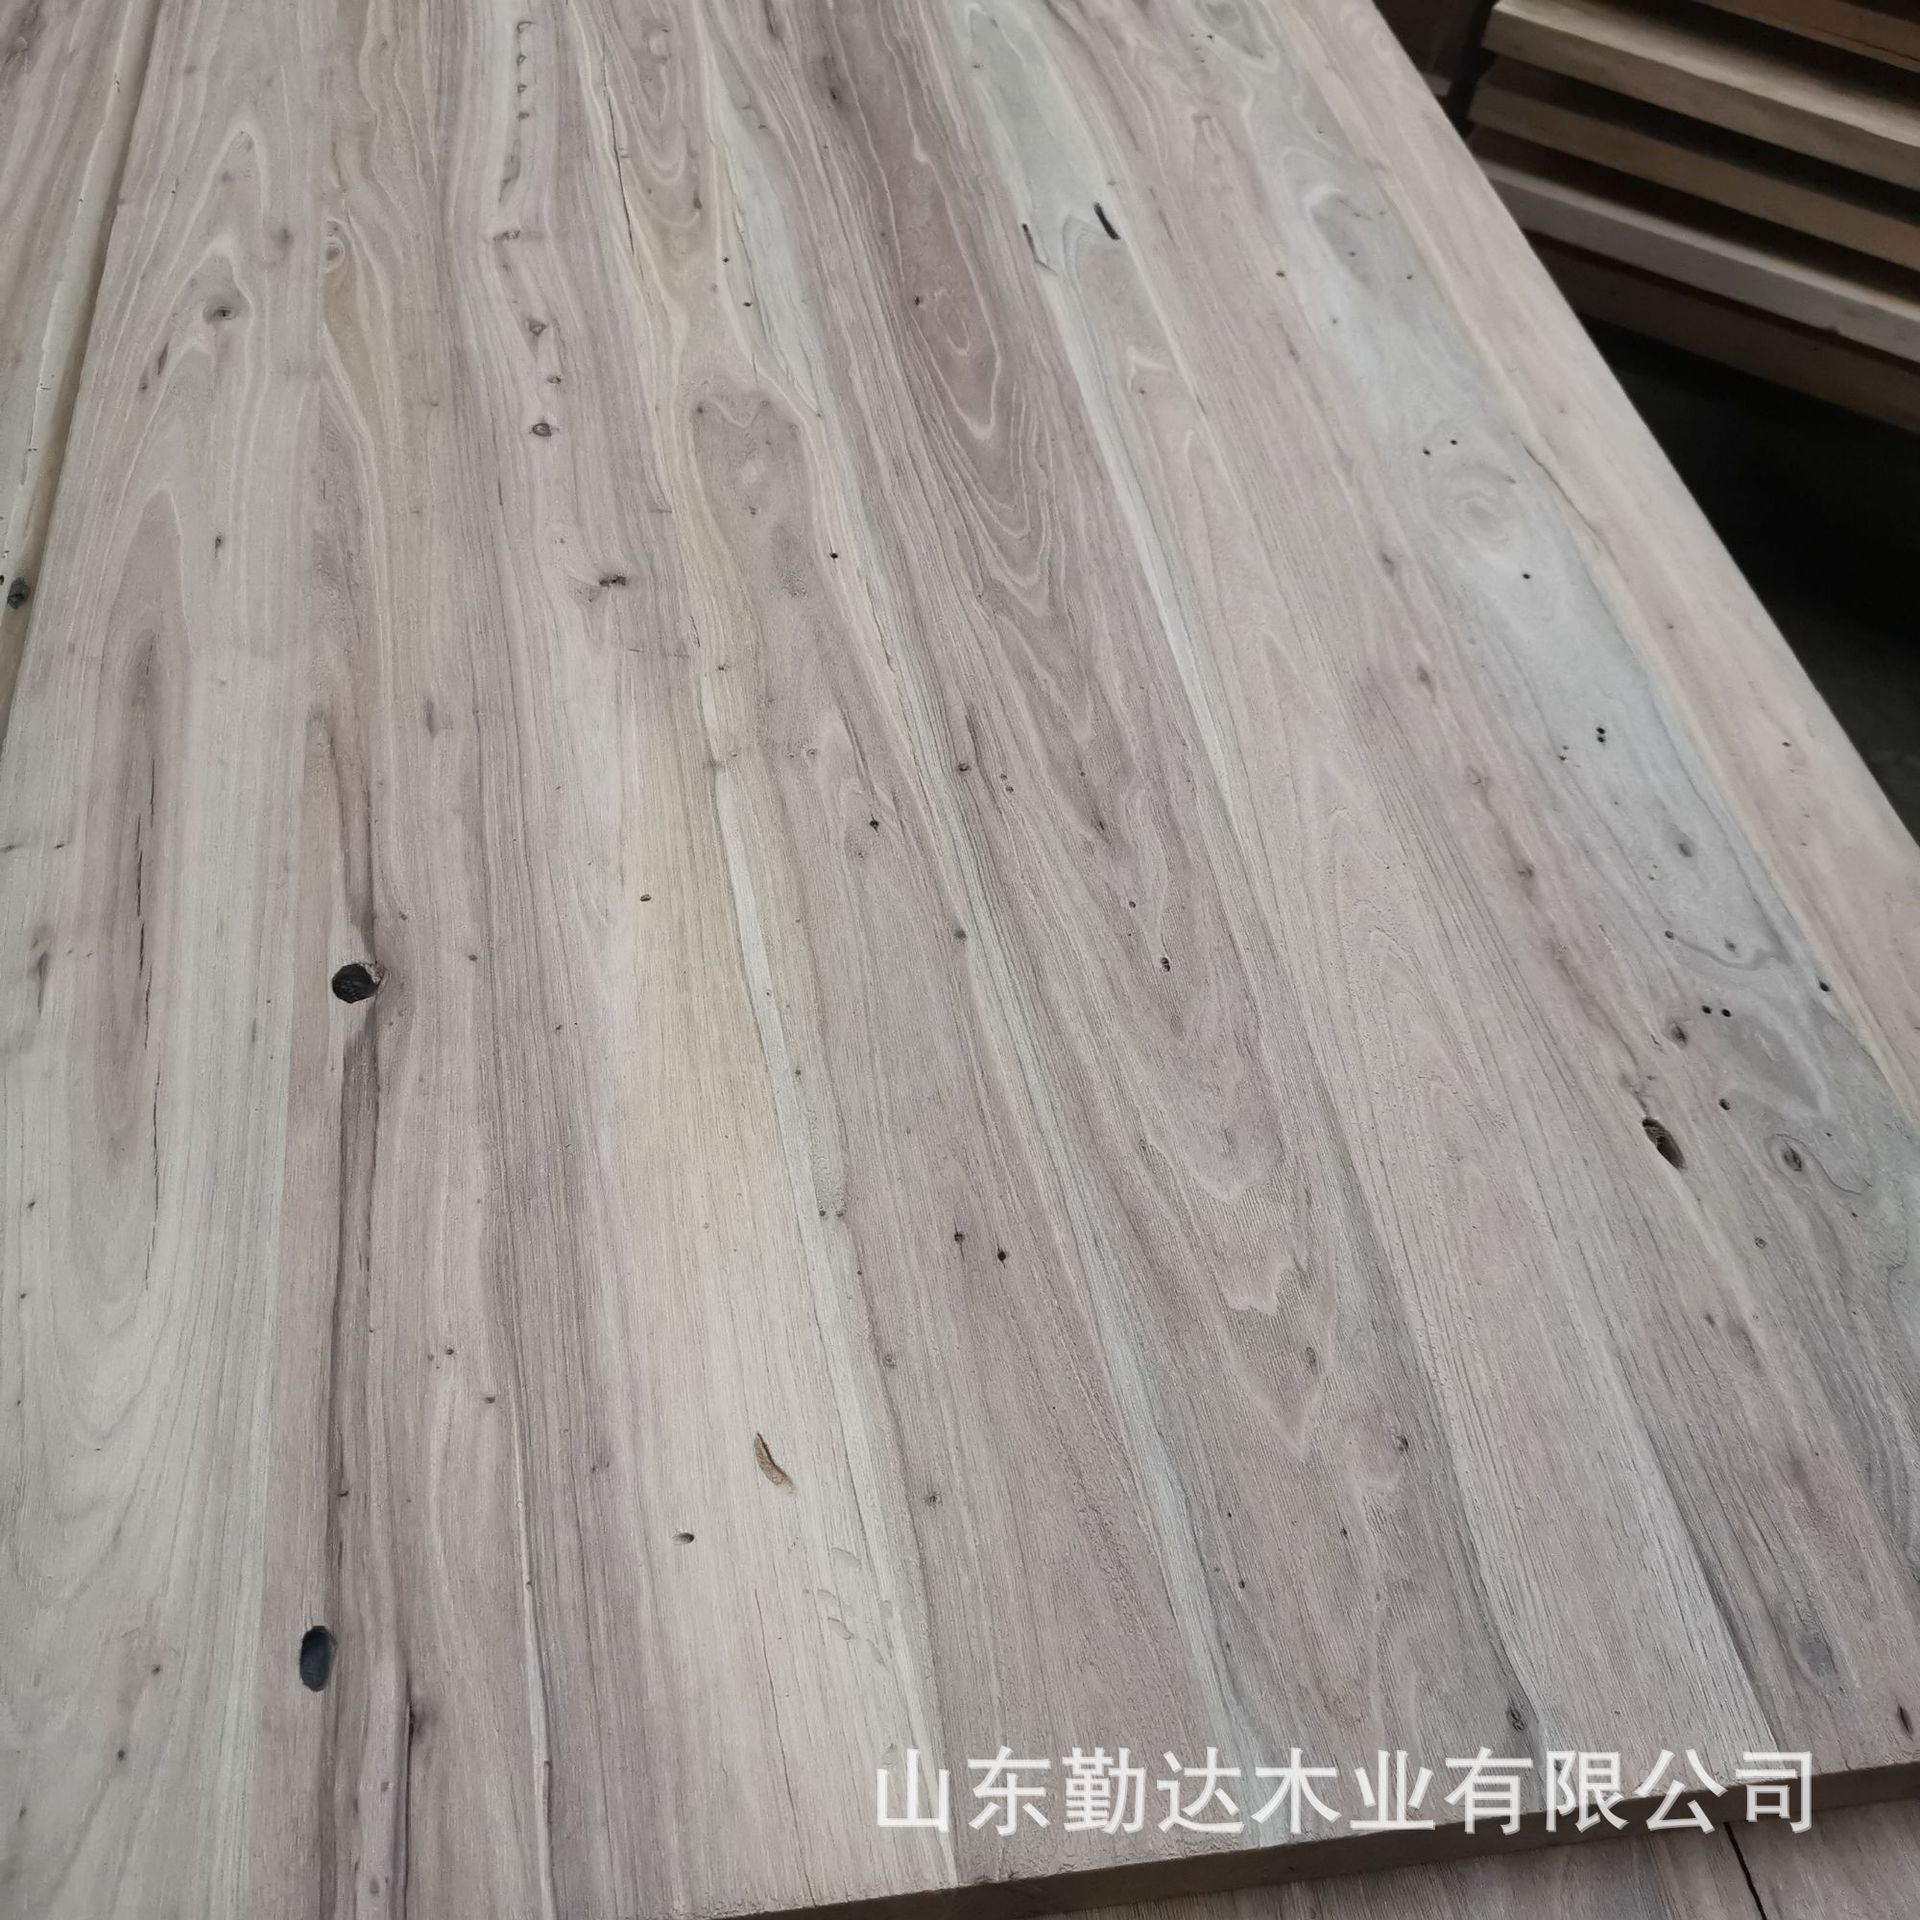 老榆木风化纹理木质家居衣柜厨板材集成建材老榆木板材